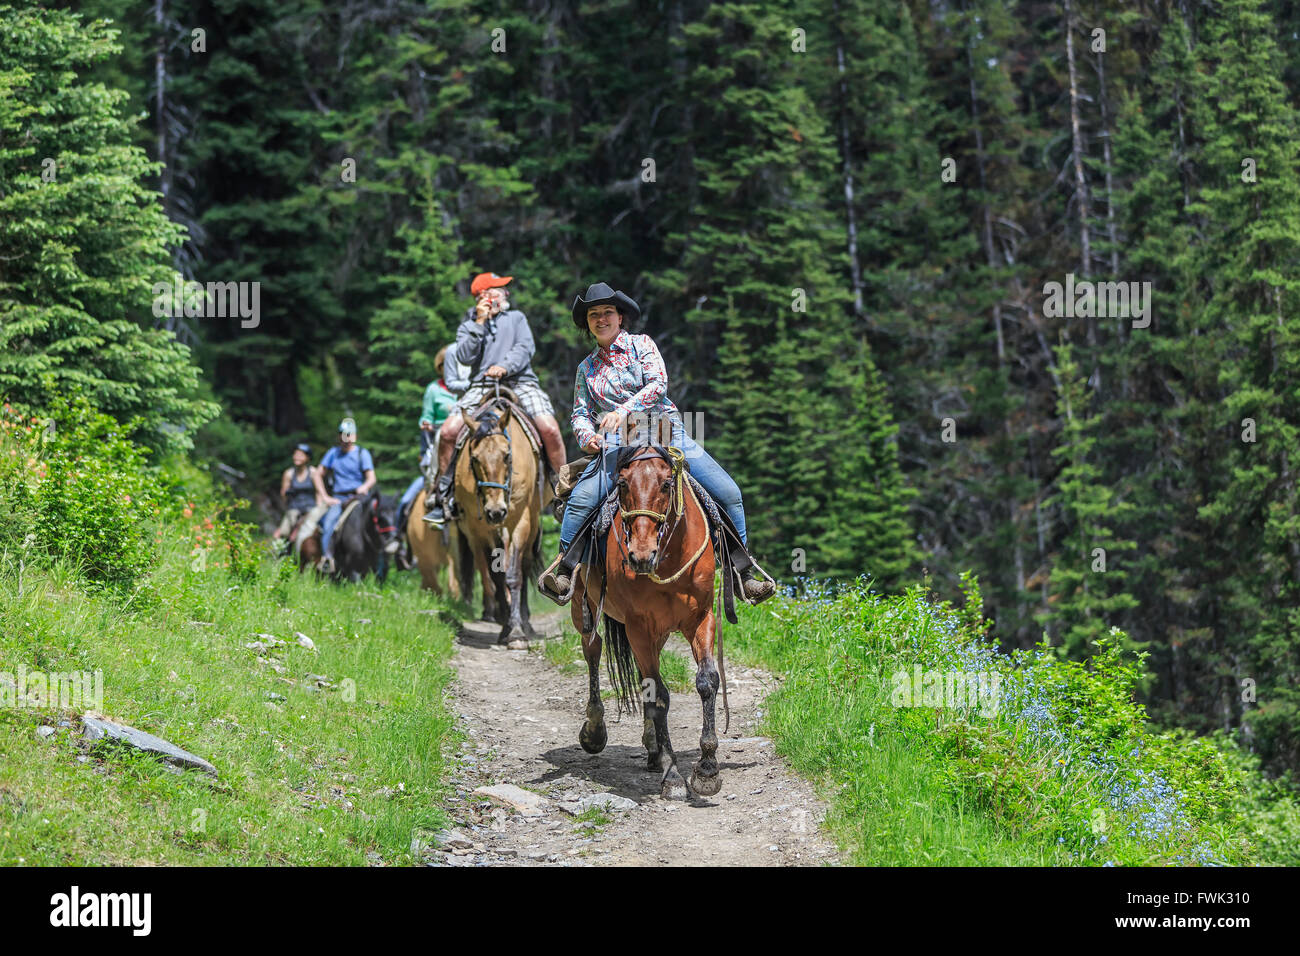 Cavaliers sur un sentier de randonnée, l'arrière-pays du parc national Banff, Alberta, Canada. Banque D'Images